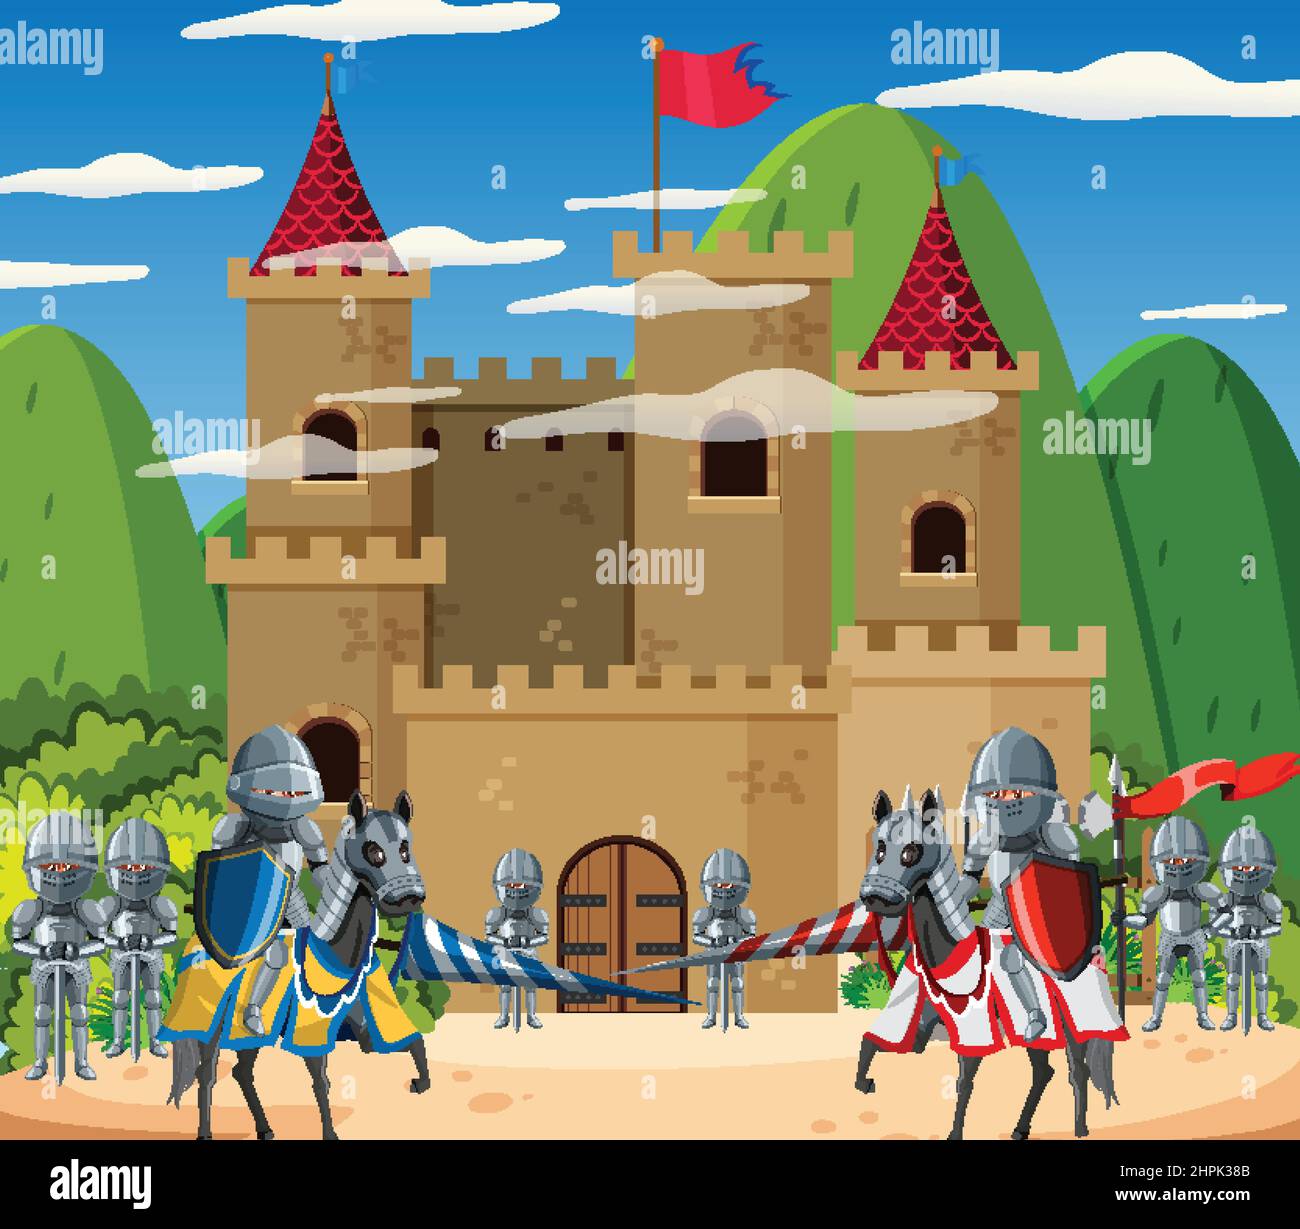 Mittelalterliche Burgszene mit zwei Armeen in Cartoon-Stil Illustration Stock Vektor